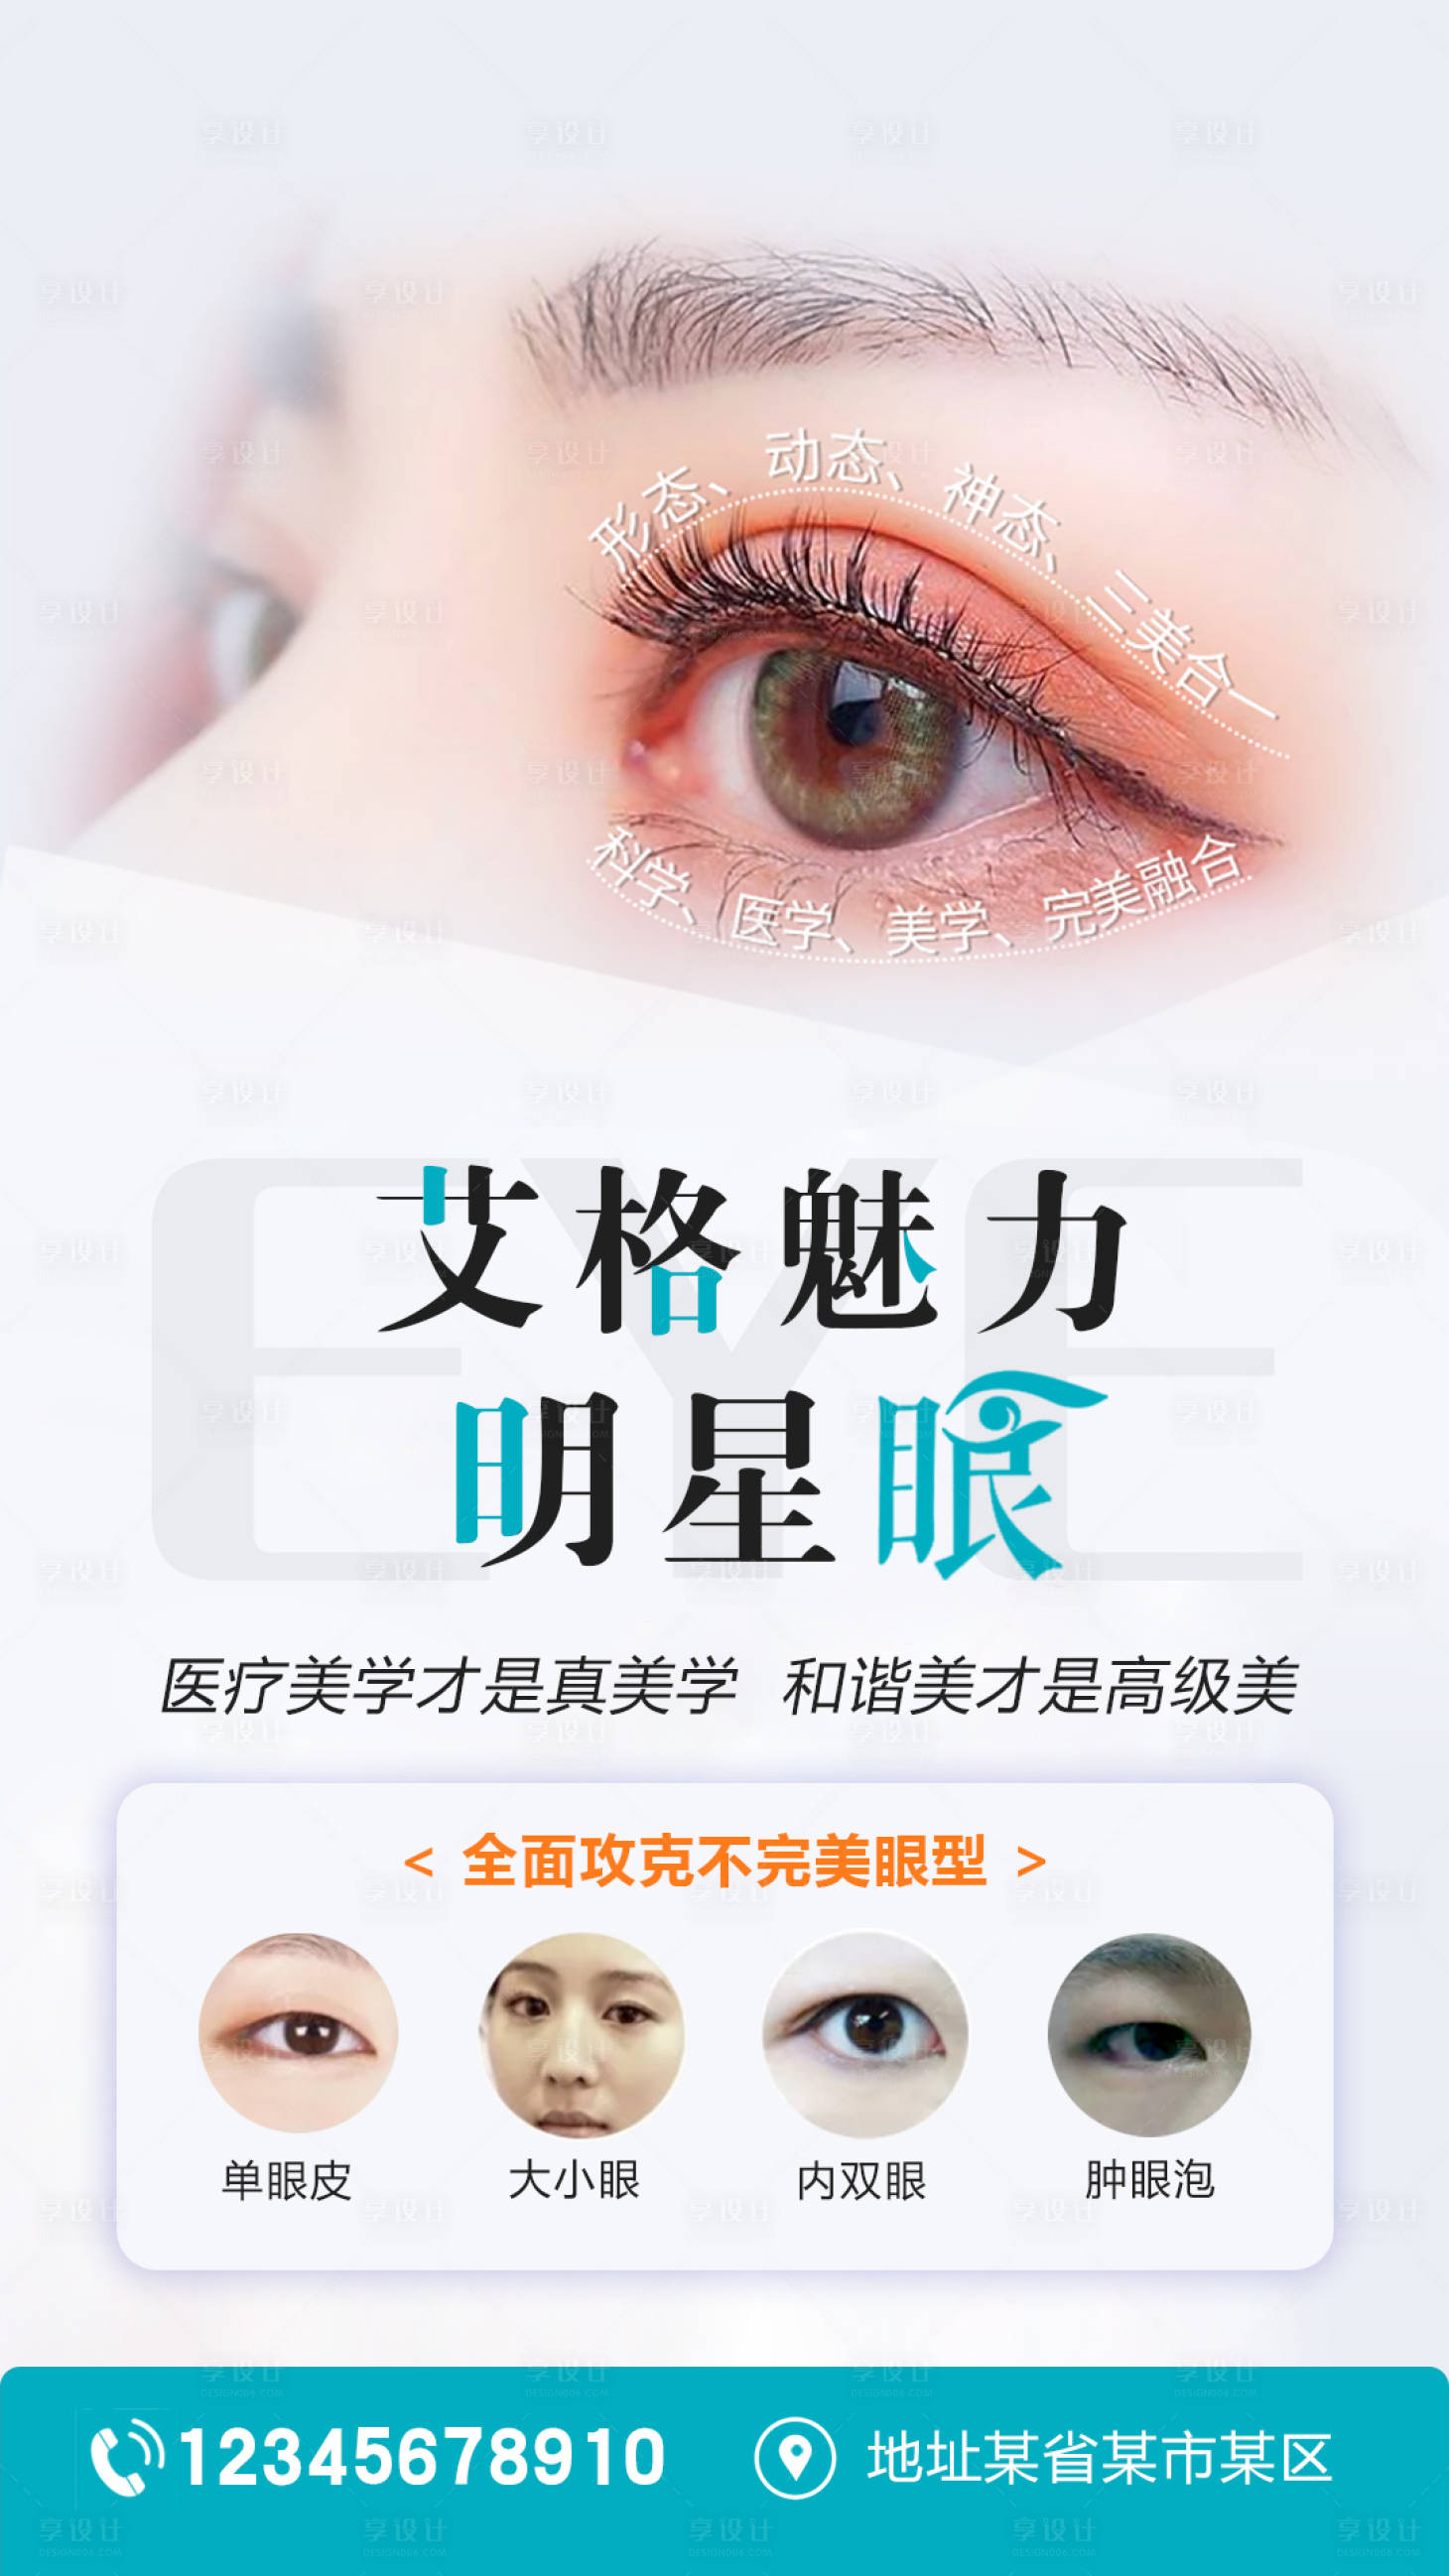 具有微整形效果的神奇調整眼妝手法與技術分享，讓你輕鬆變成大眼妹單眼皮的救星